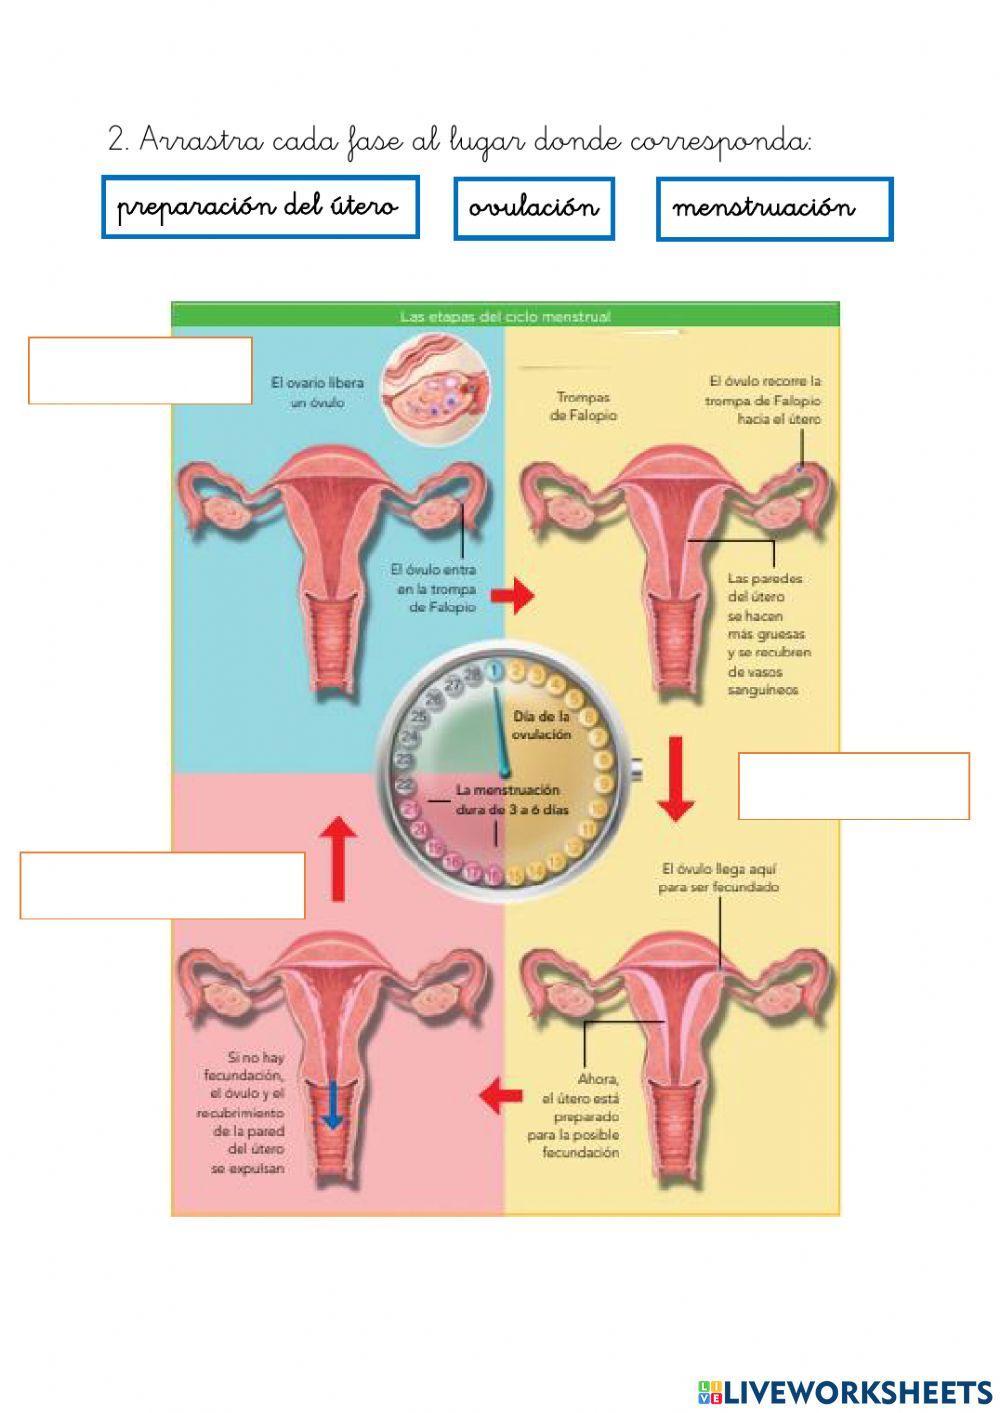 Ciclo menstrual